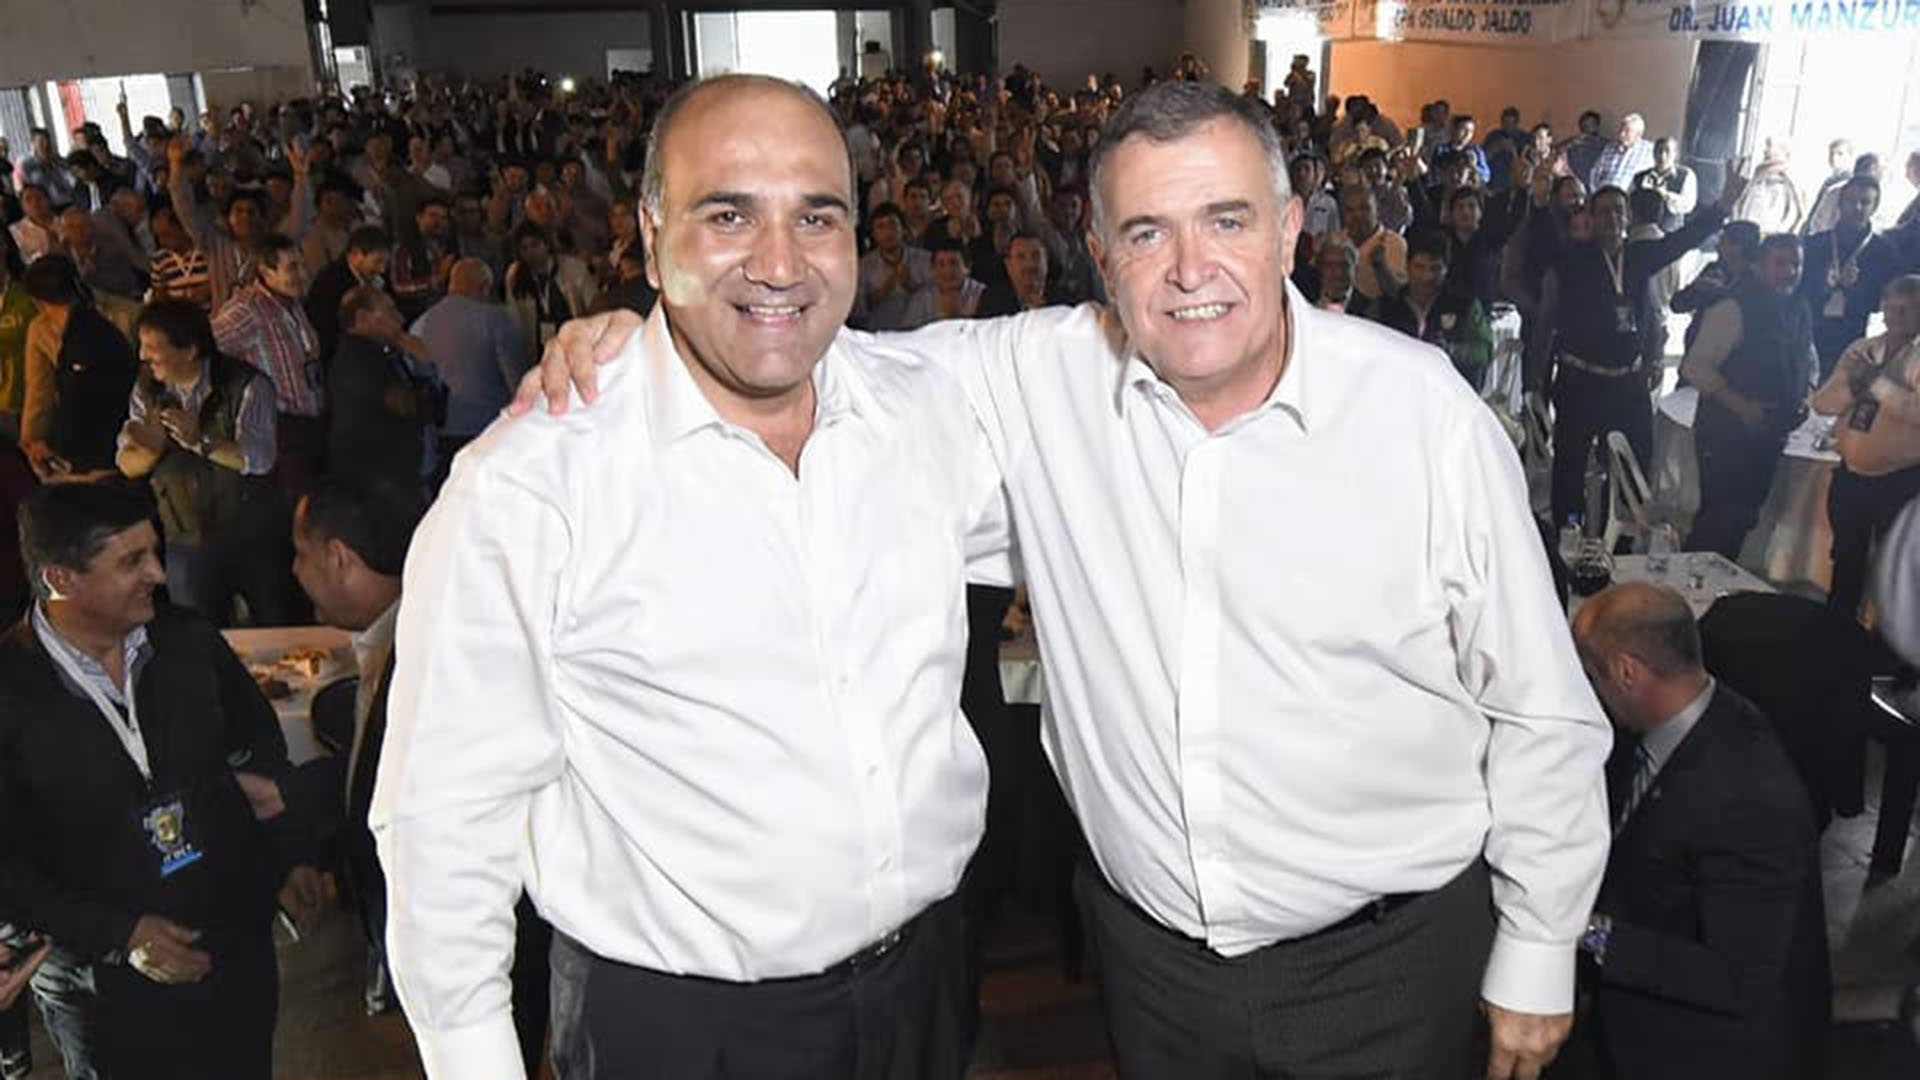 Juan Manzur y Osvaldo Jaldo, actual gobernador de Tucumán (https://www.osvaldojaldo.com.ar/)